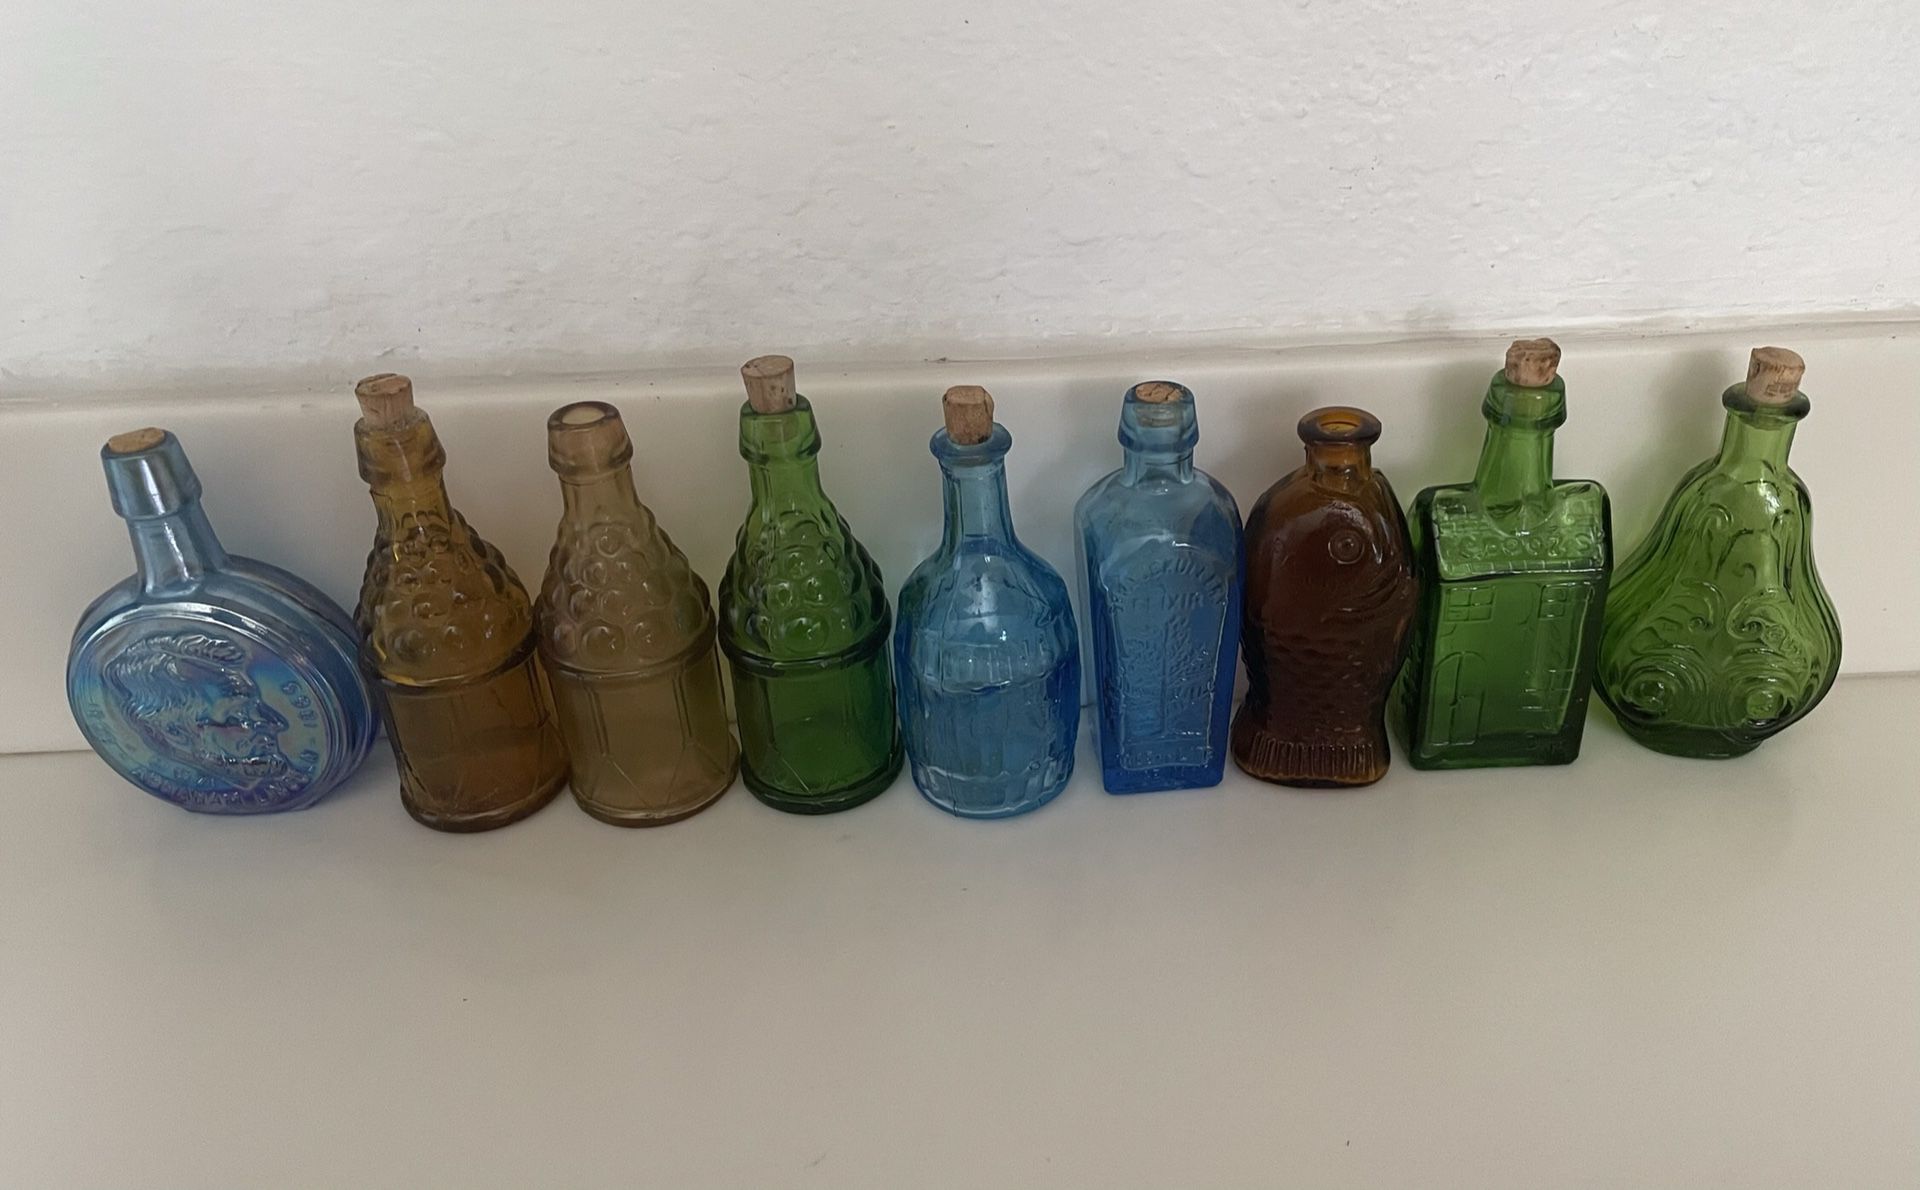 9-Vintage Colored Glass Bottles 